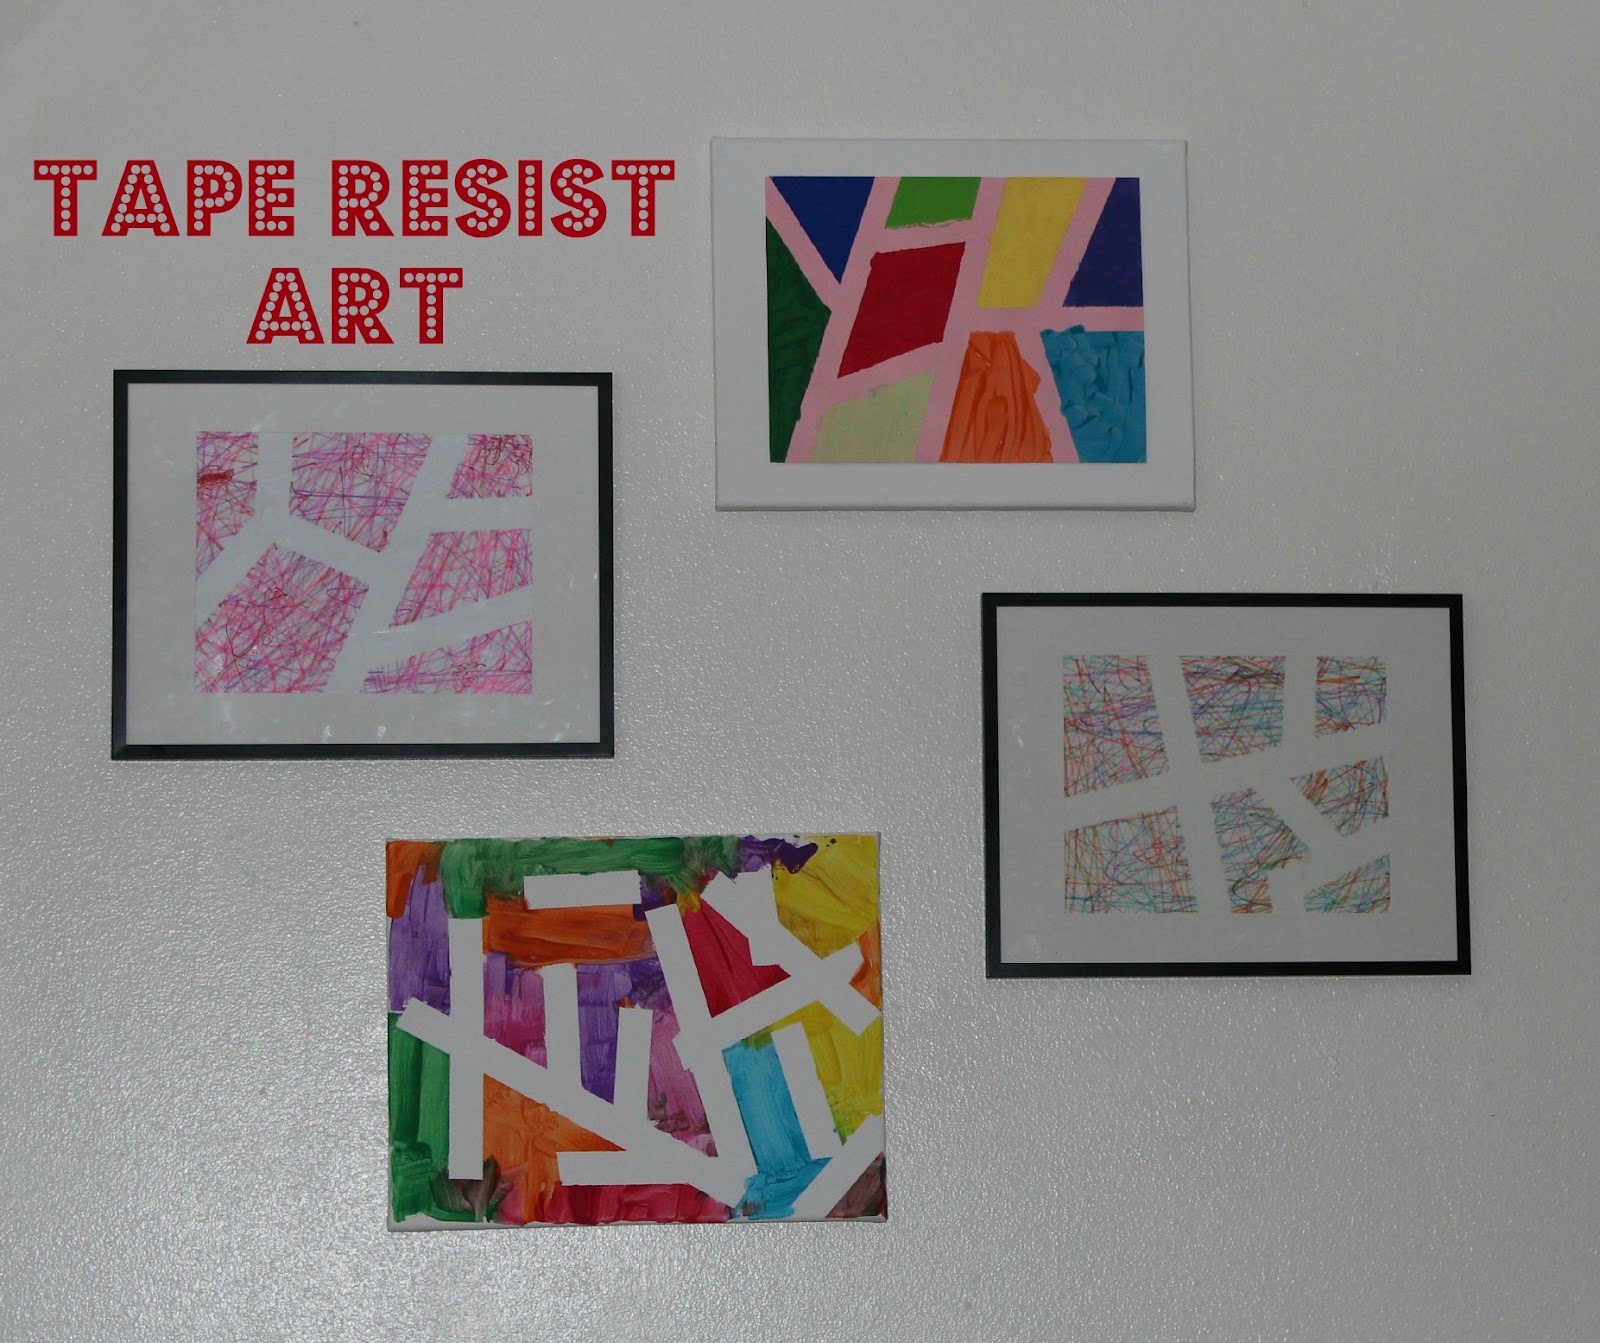 Tape Resist Art - The Imagination Tree